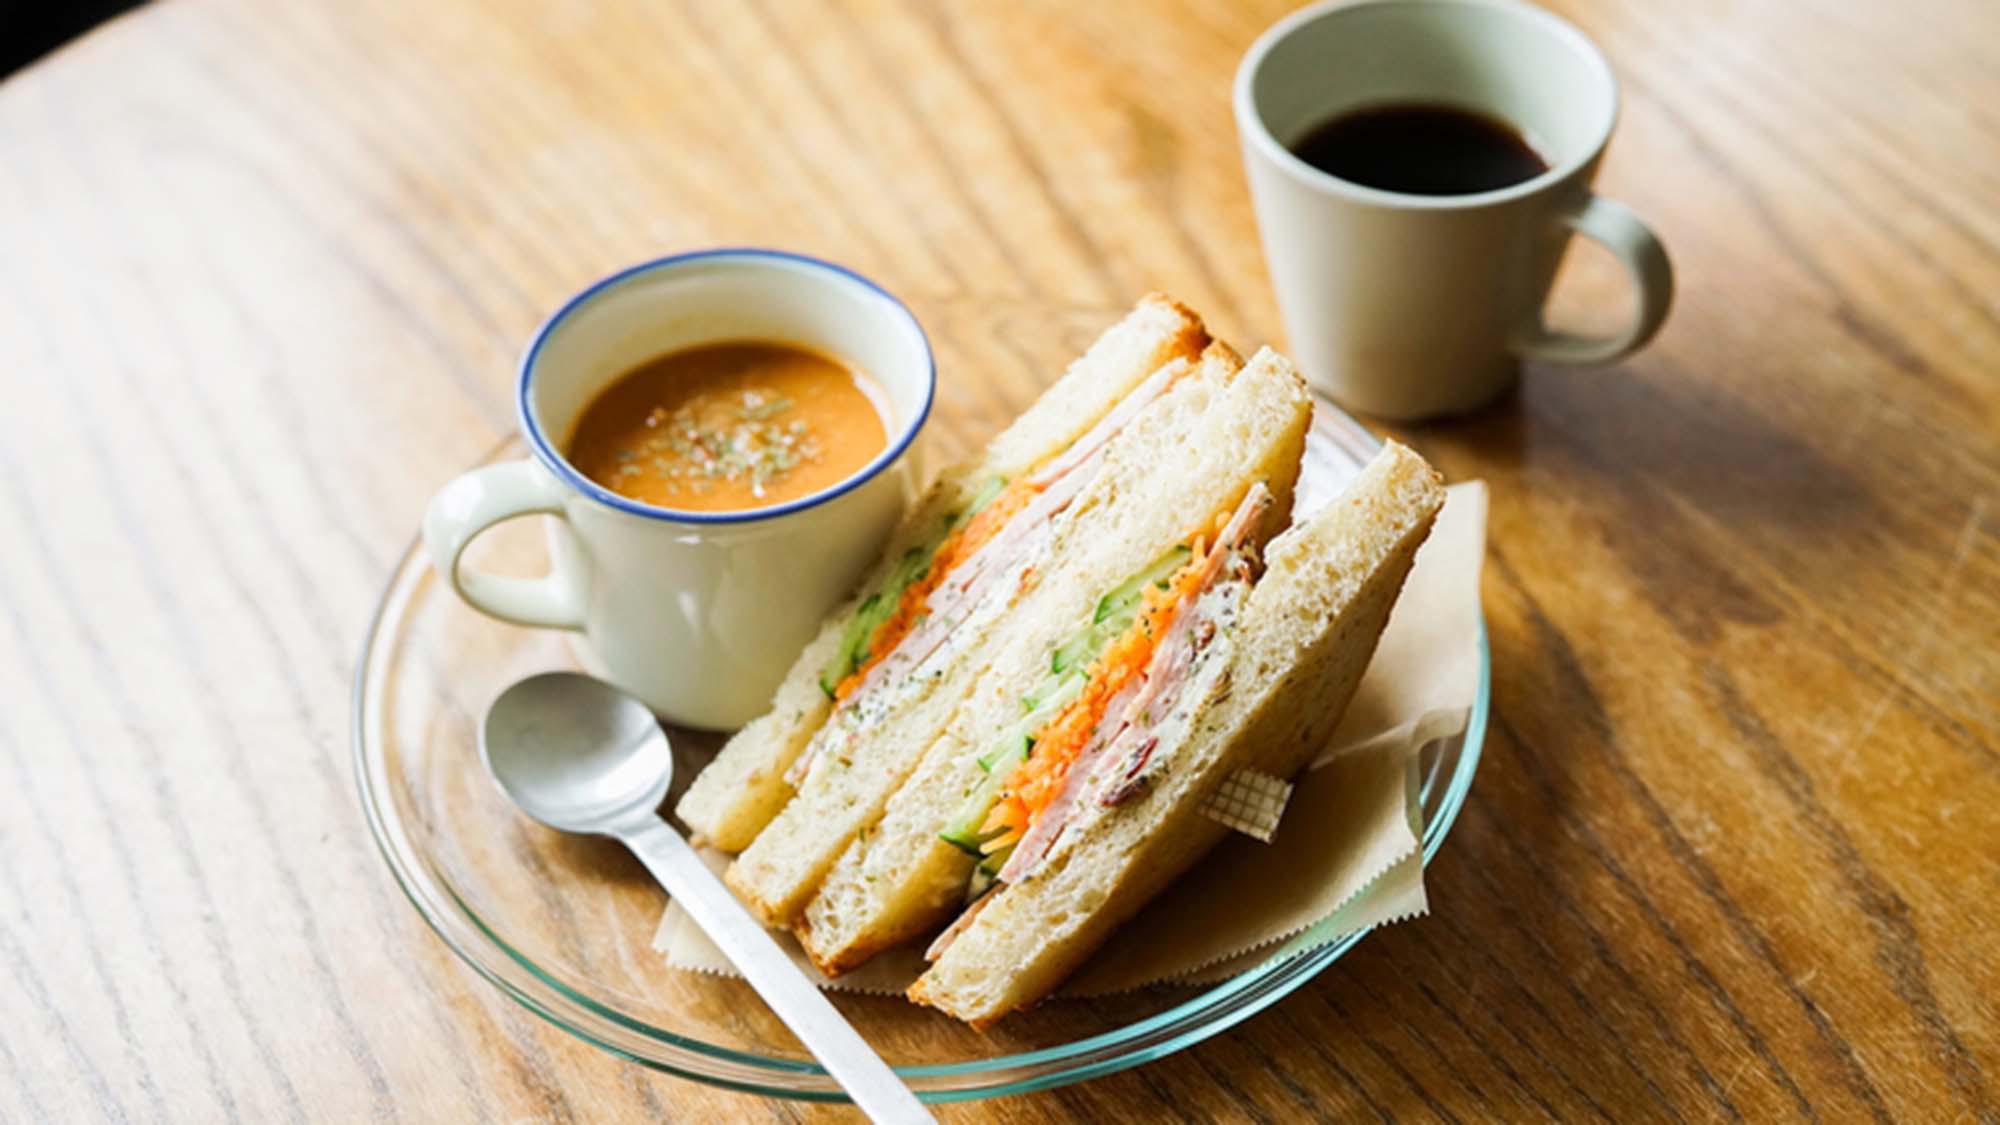 ・【カフェ】朝食は地元の野菜と食材をグラハムパンで挟んだサンドイッチとスープをご用意しております